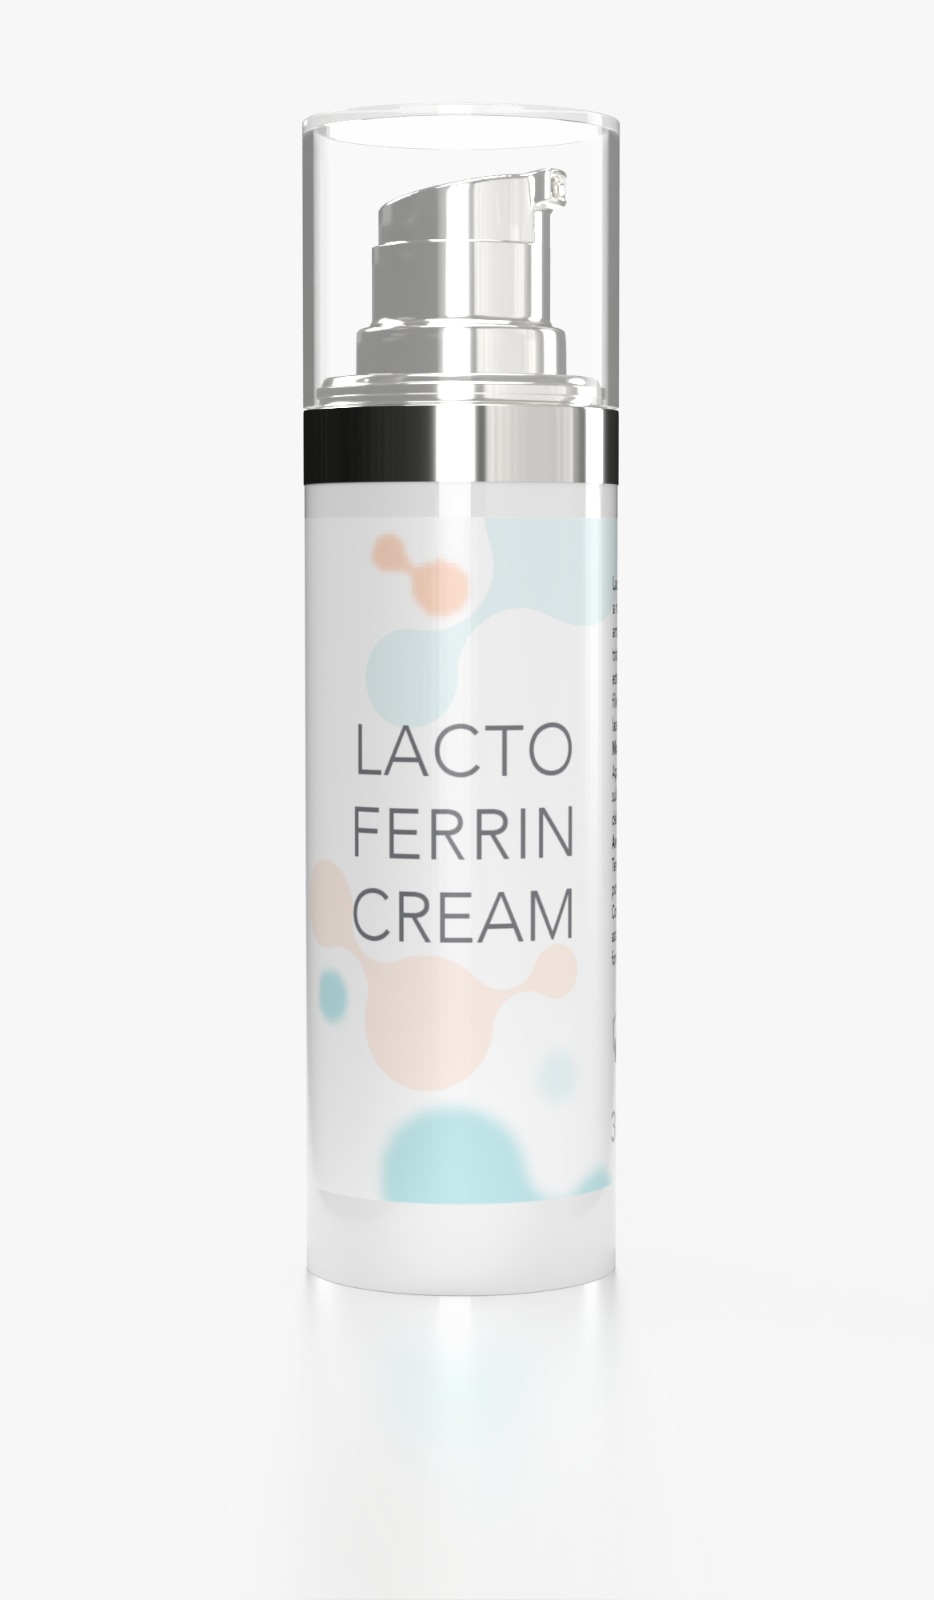 Lactoferrin cream